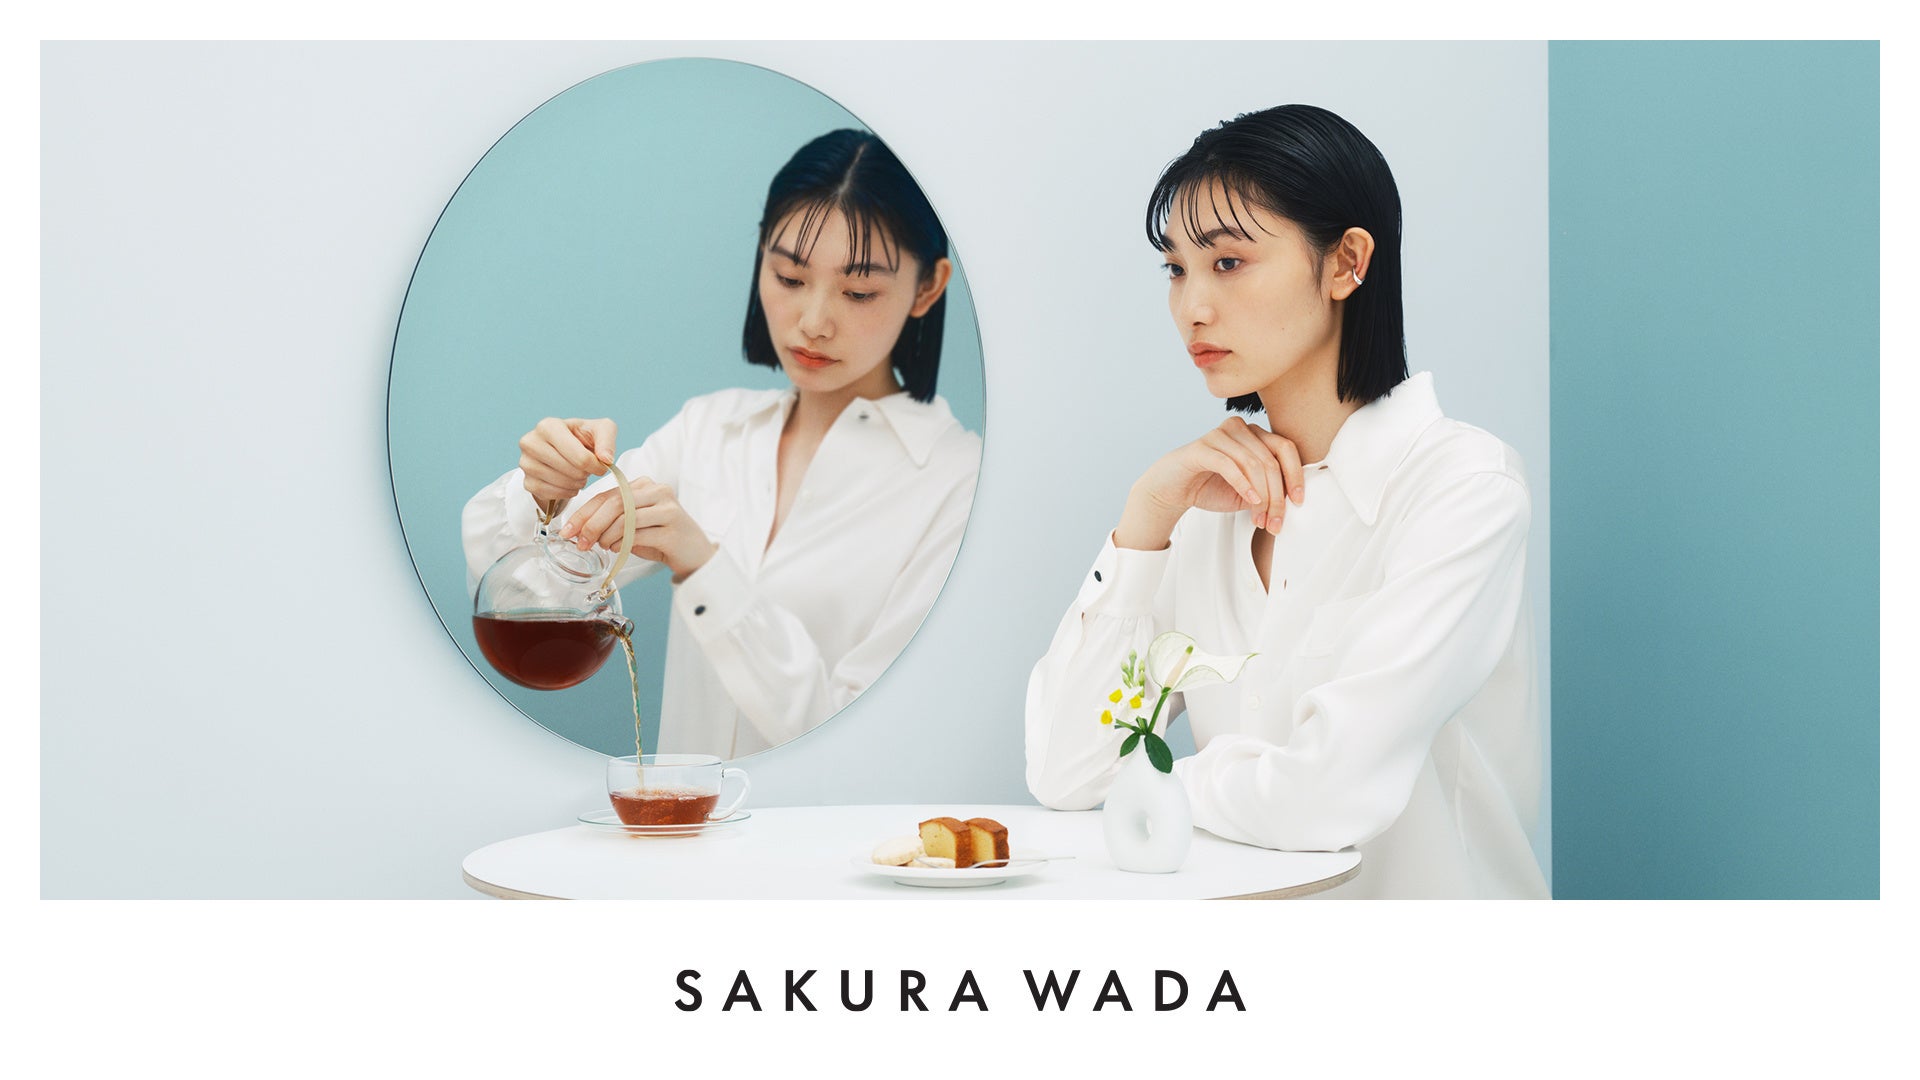 自分を大切に愛すための新ブランド「SAKURA WADA」が薬膳の思想に基づく健康茶の販売を開始。